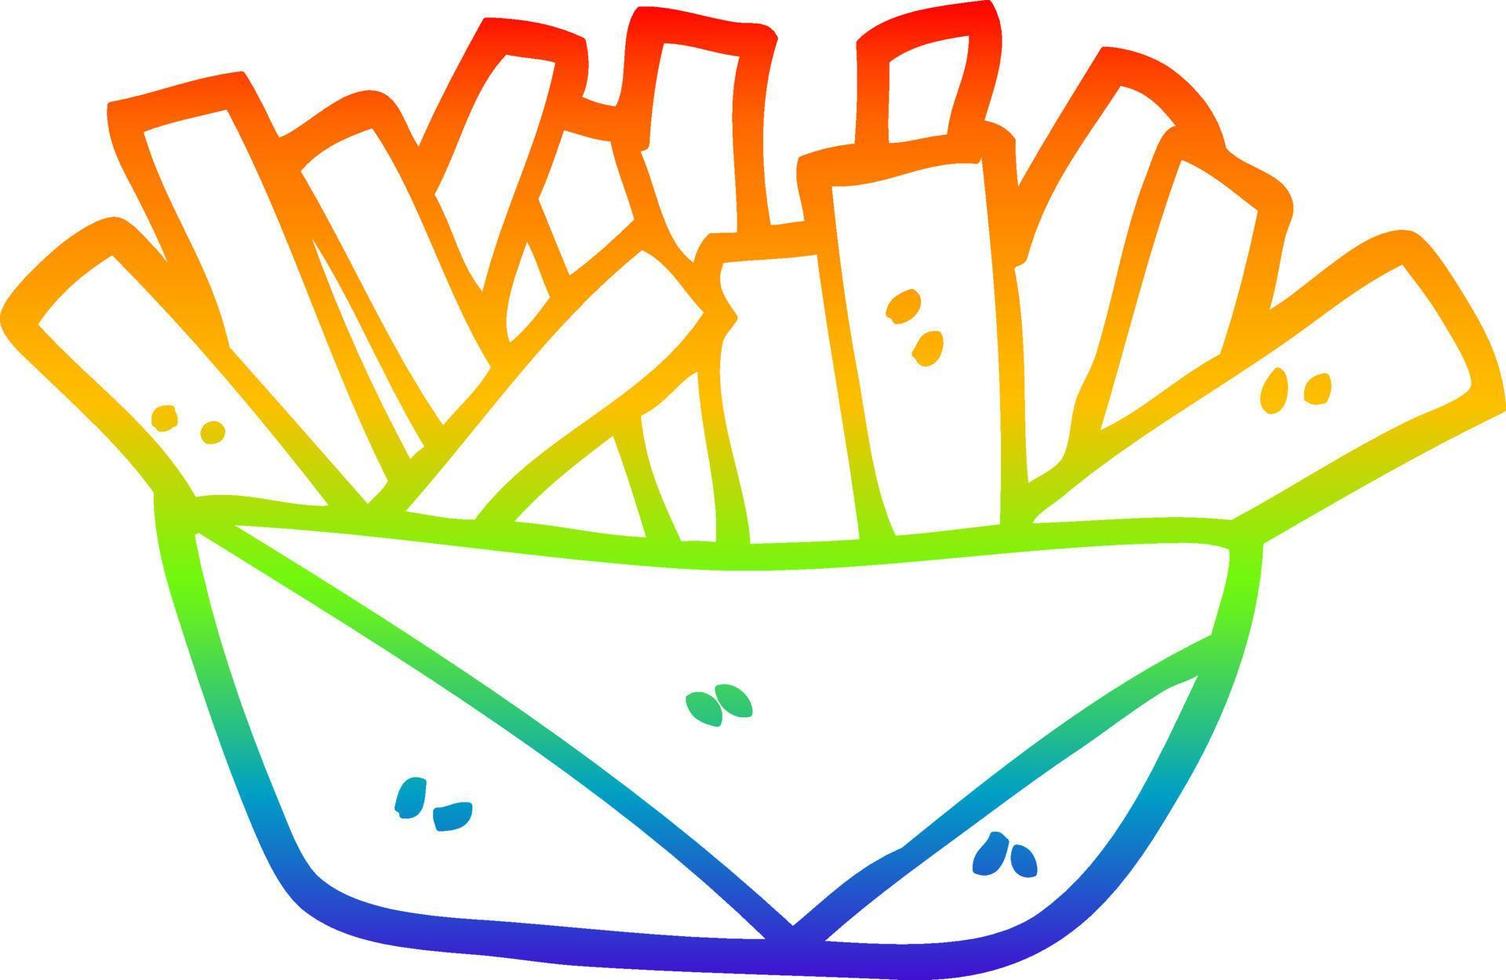 Patatine fritte del fumetto di disegno a tratteggio sfumato arcobaleno vettore